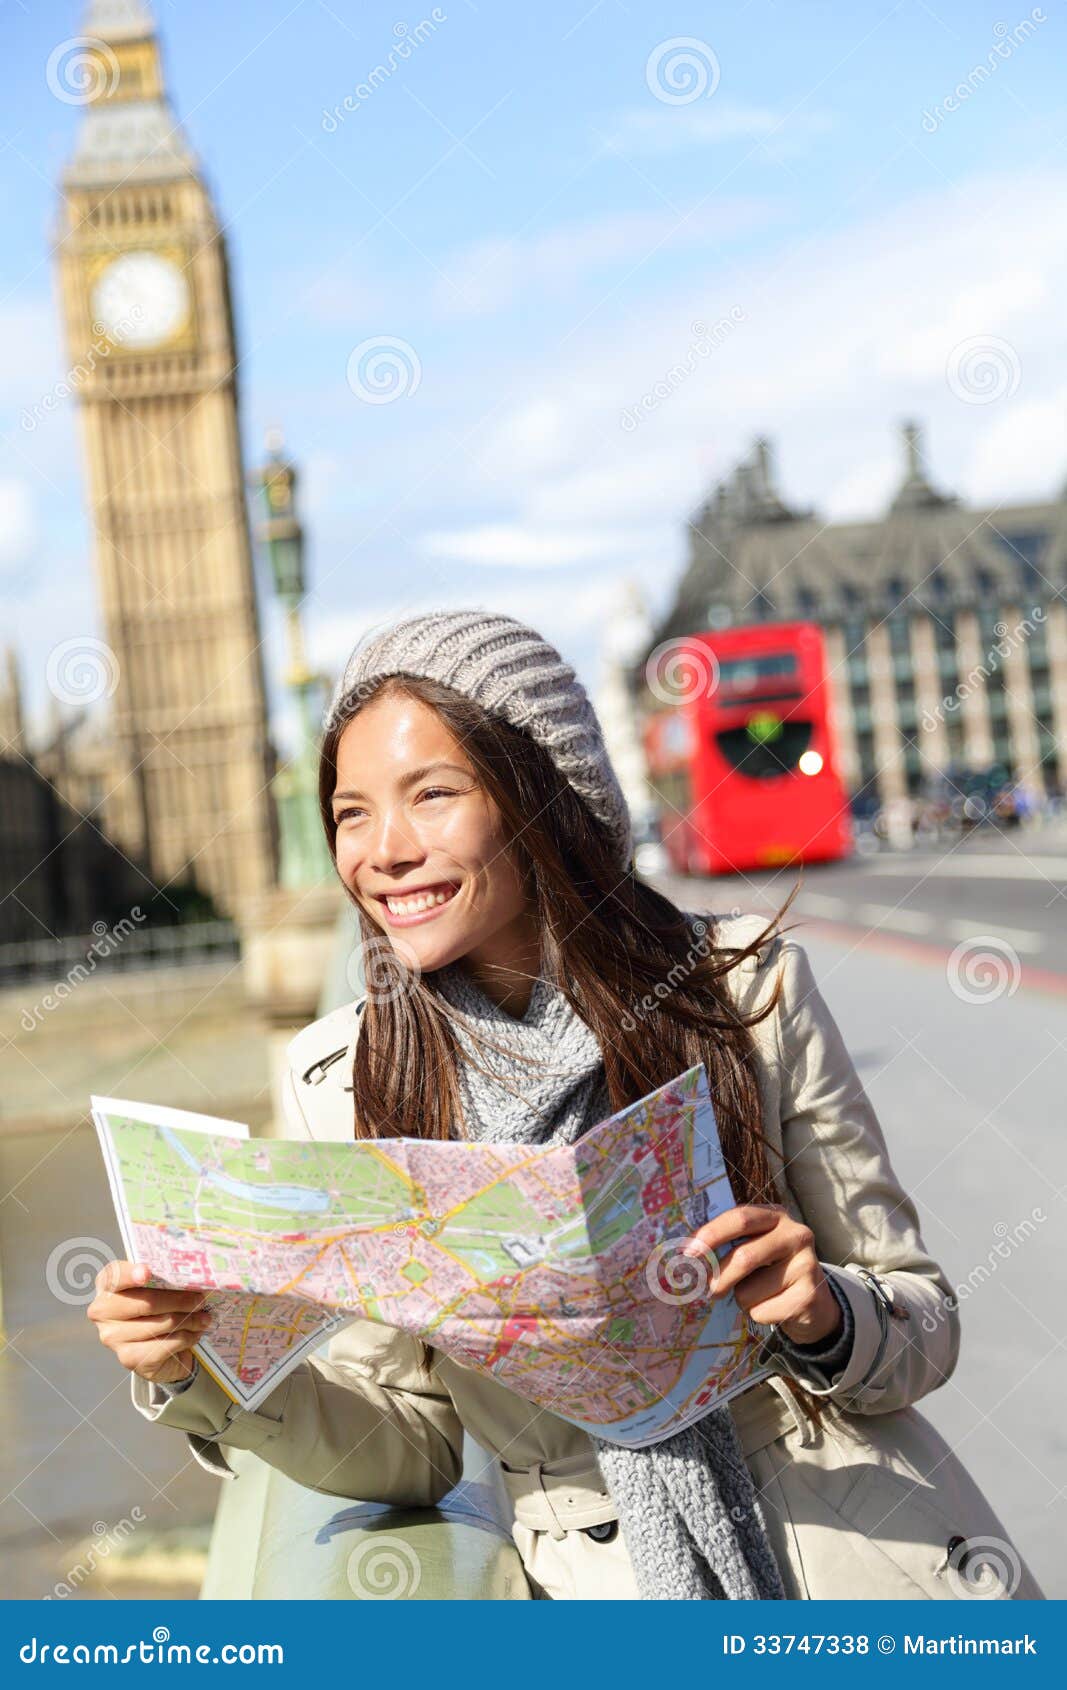 the british tourist girl